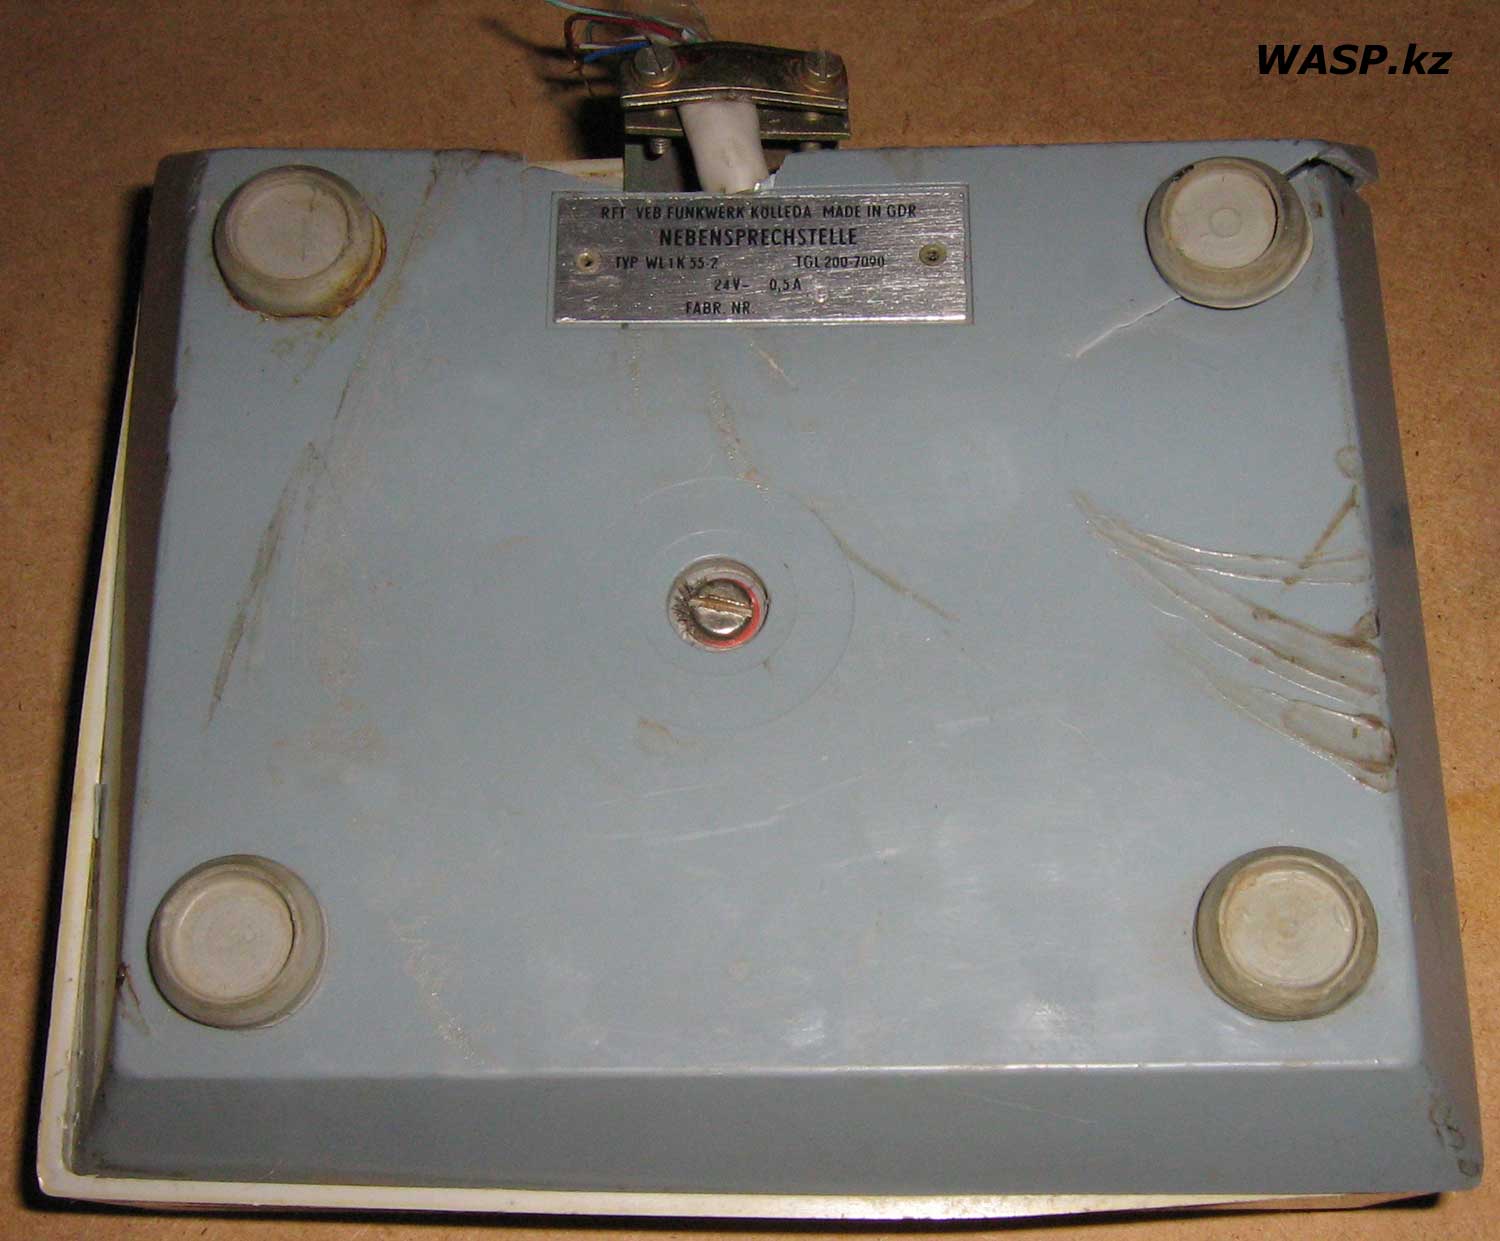 RFT WL1K55-2 полное описание и днище станции домофона 1985 год